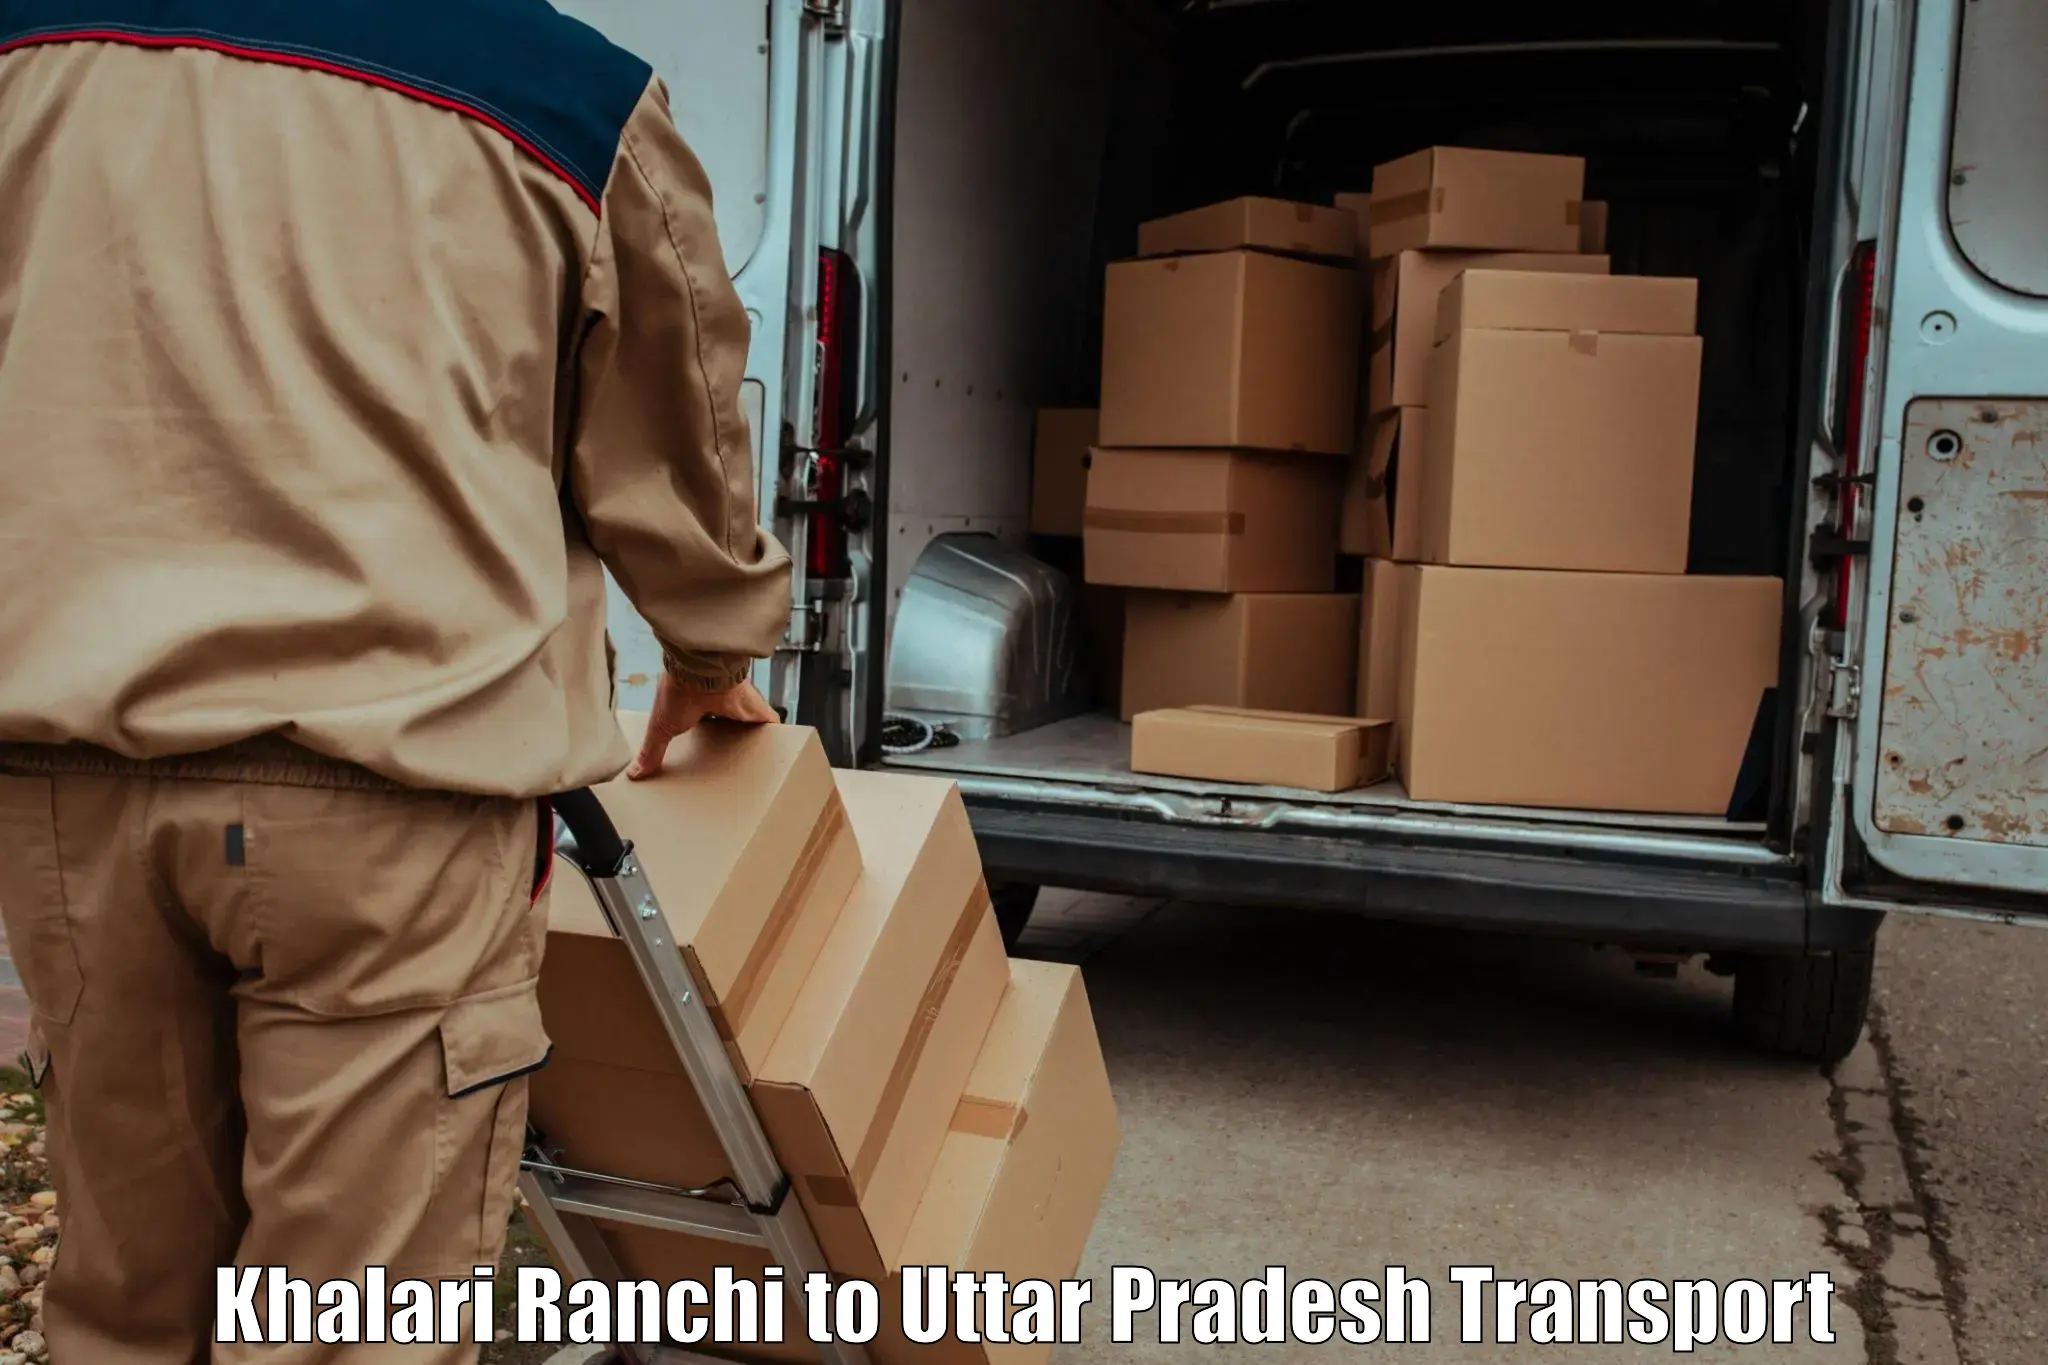 Daily transport service Khalari Ranchi to Dadri